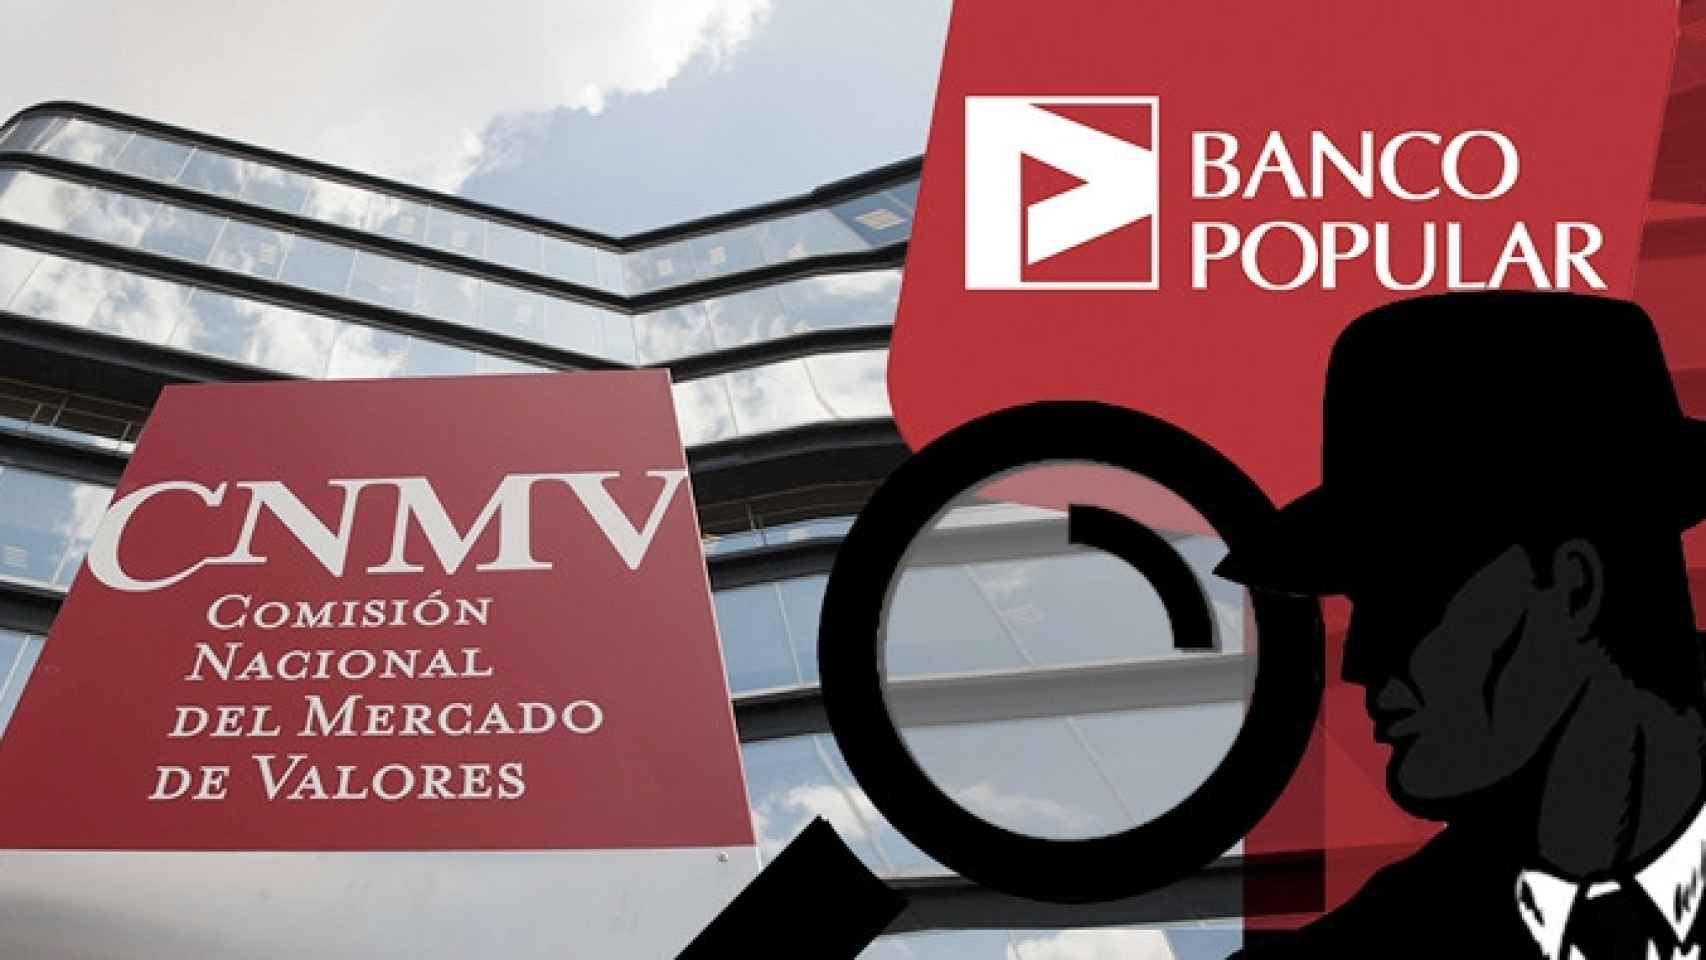 La sede de la CNMV en Madrid y el logotipo de Banco Popular / FOTOMONTAJE DE CG